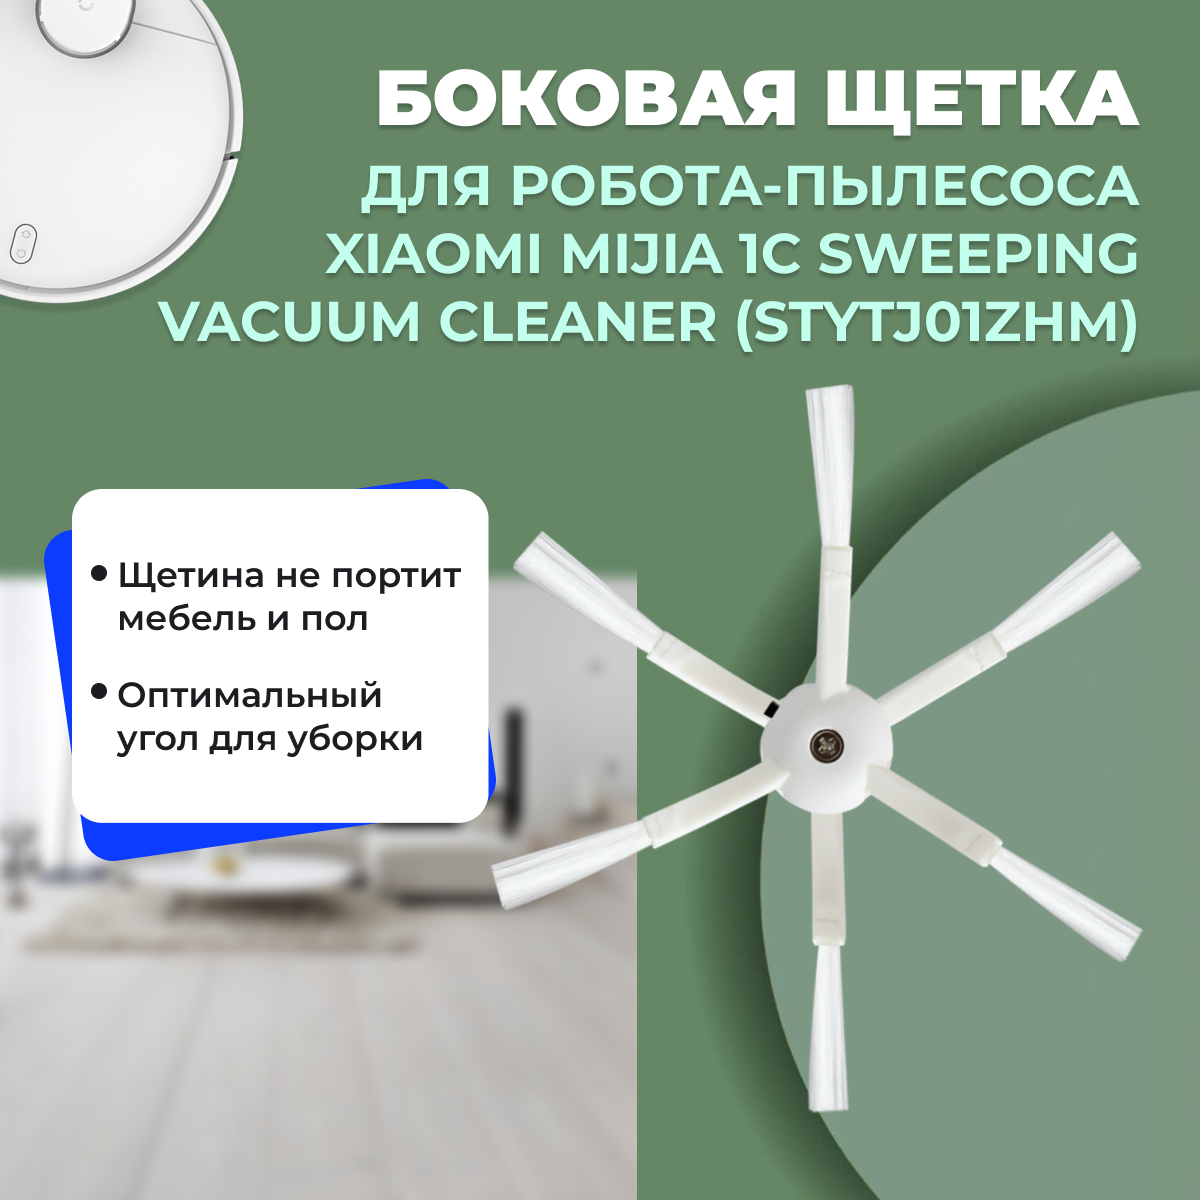 Боковая щетка для робота-пылесоса Xiaomi Mijia 1C Sweeping Vacuum Cleaner (STYTJ01ZHM) 558156, фото 1